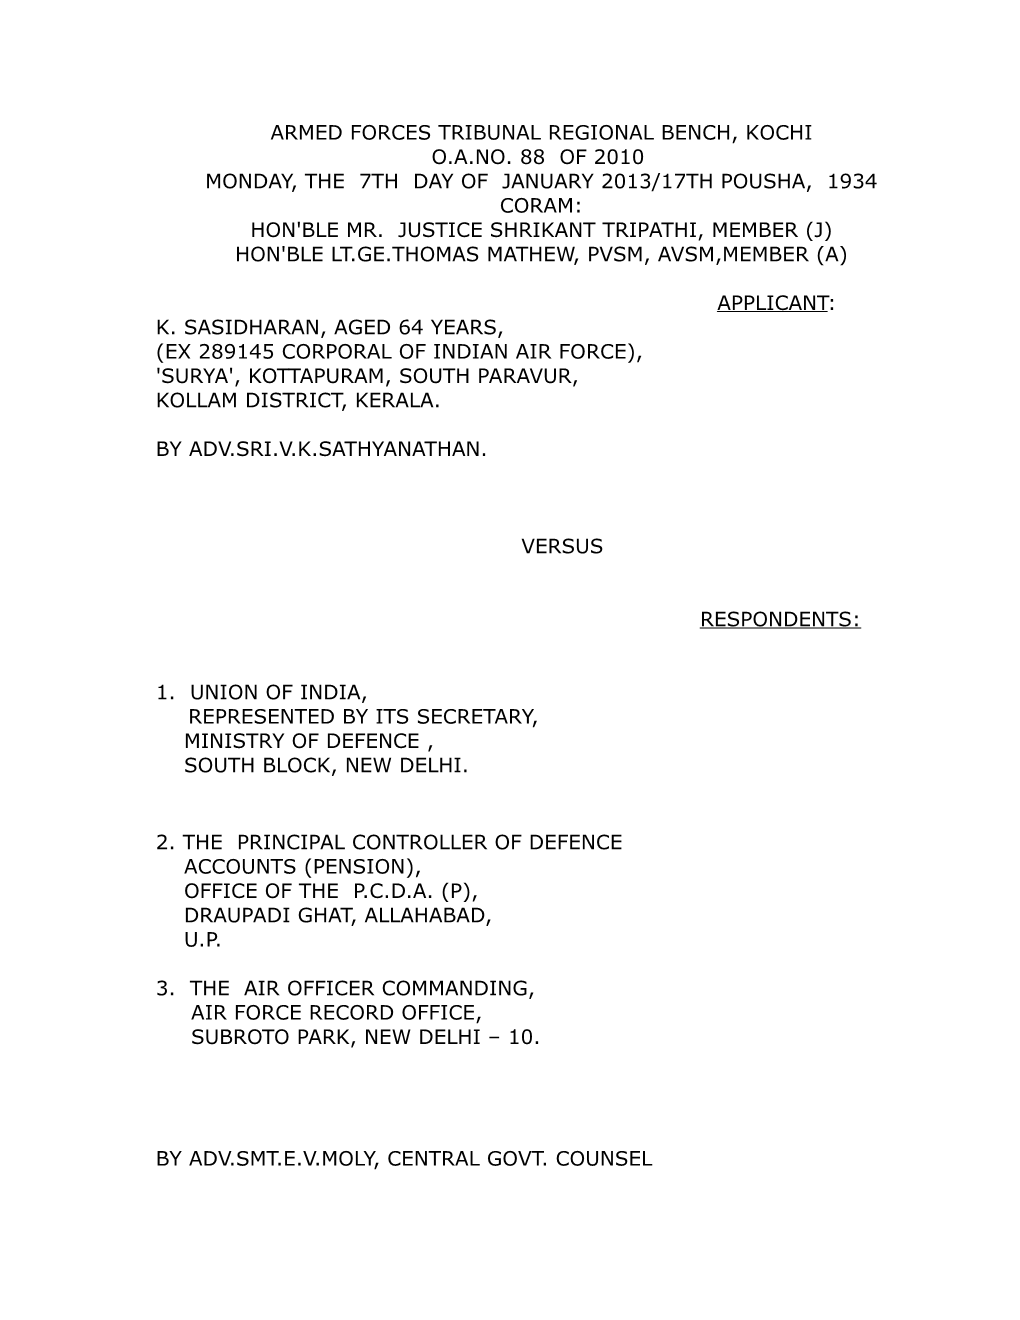 Armed Forces Tribunal Regional Bench, Kochi O.A.No